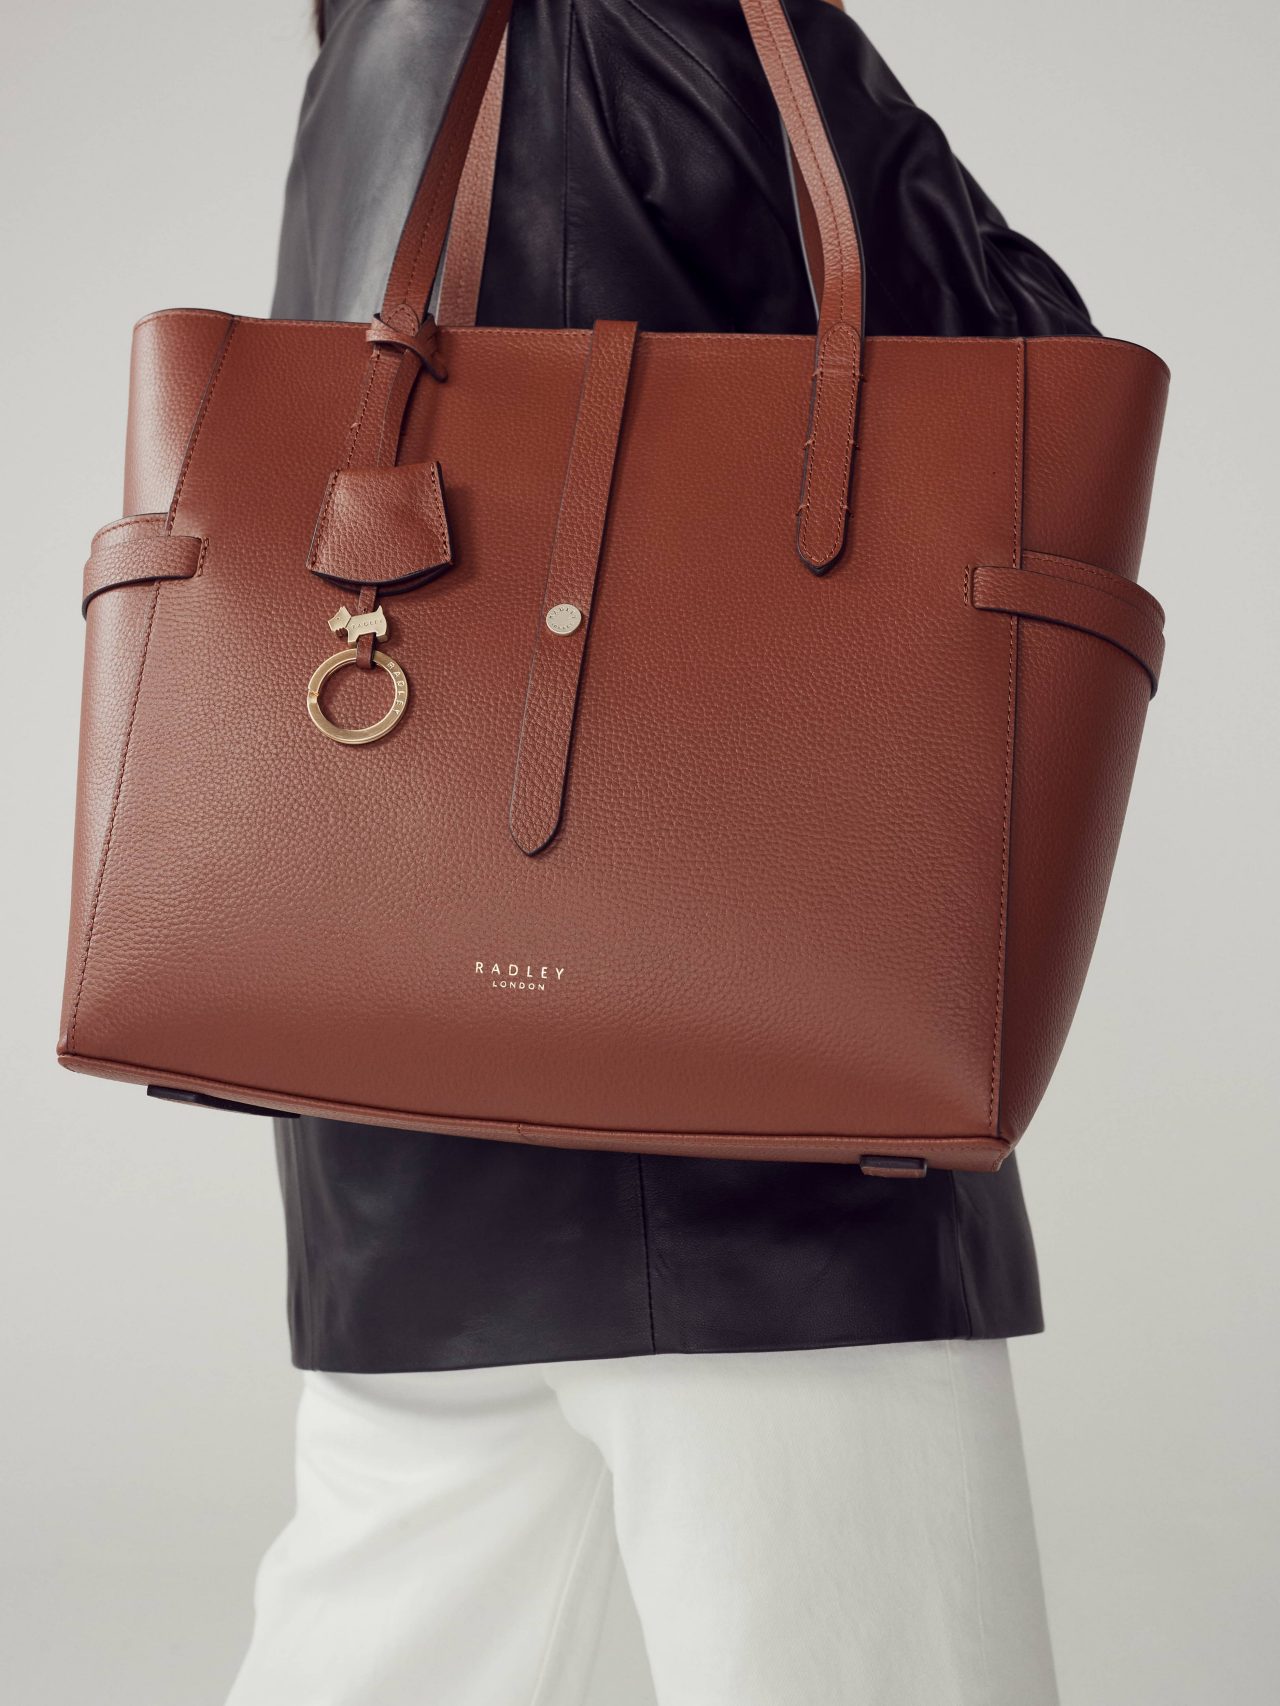 Model with Abingdon Road leather tote handbag